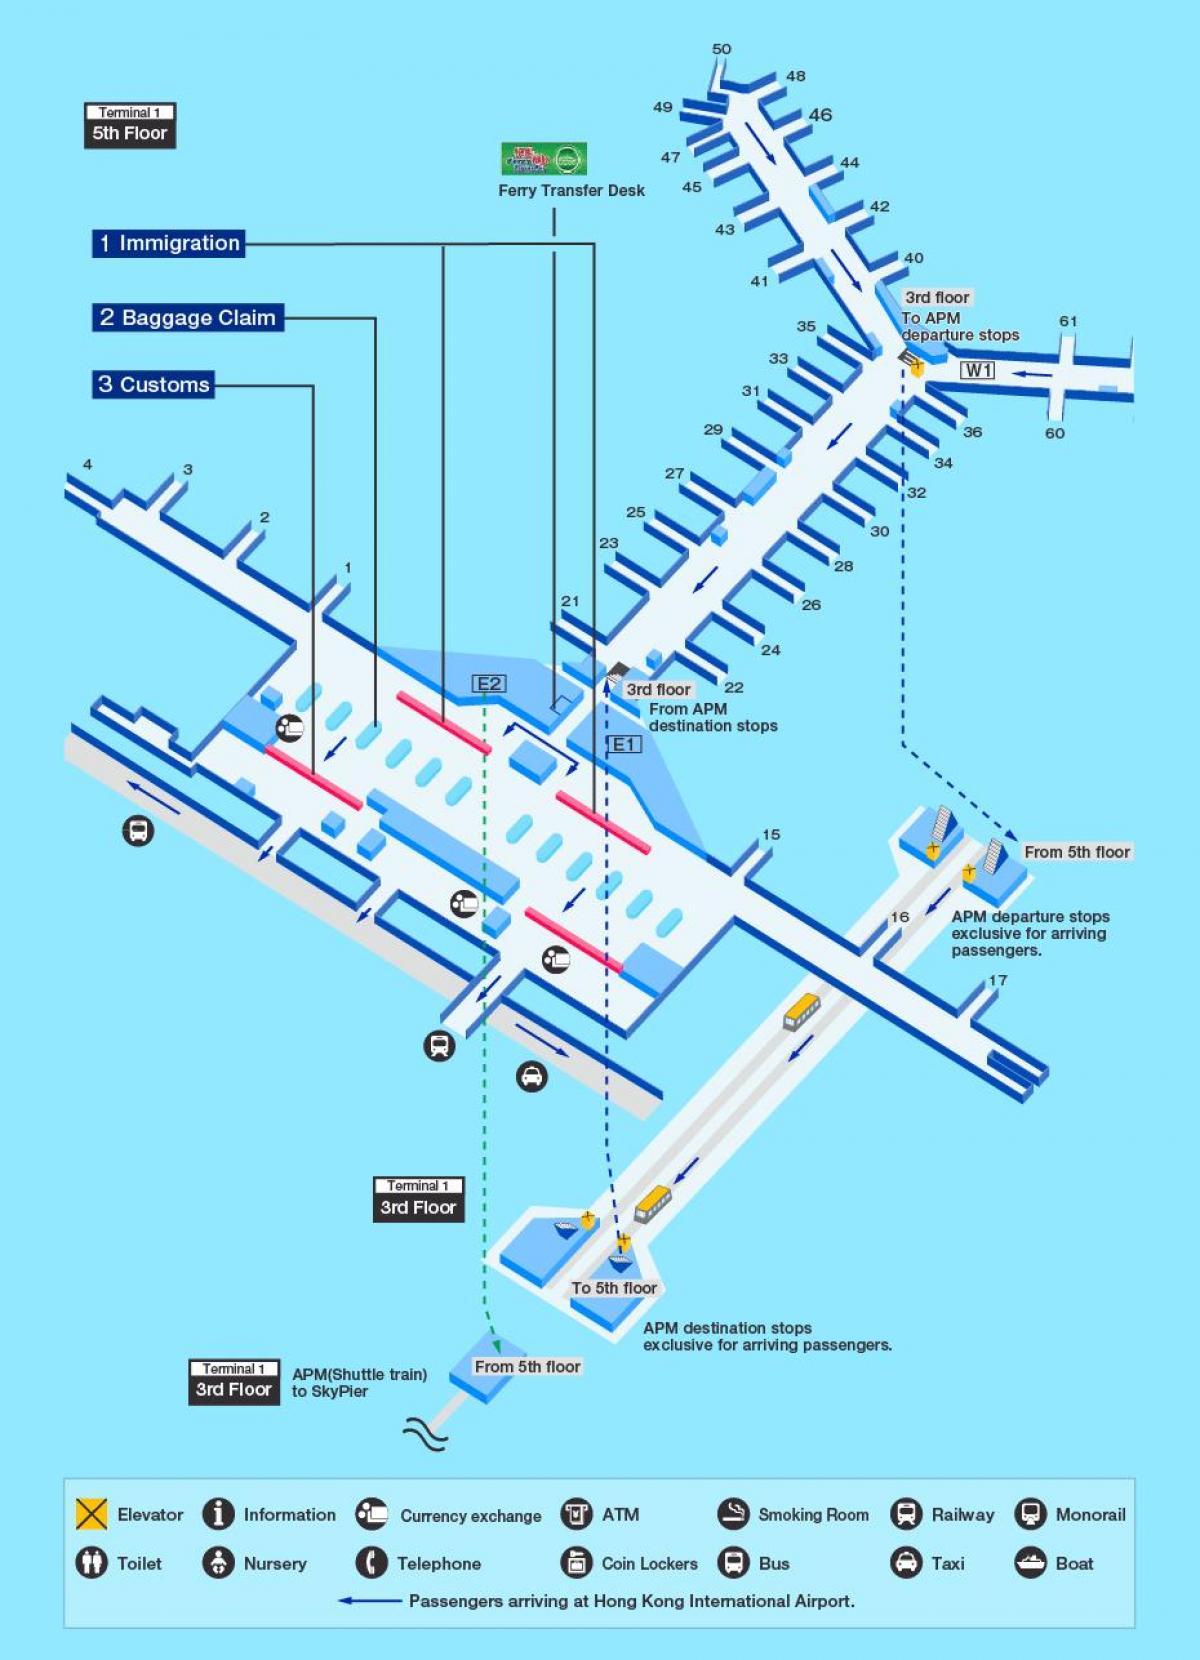 Honkongo oro uosto vartų žemėlapyje